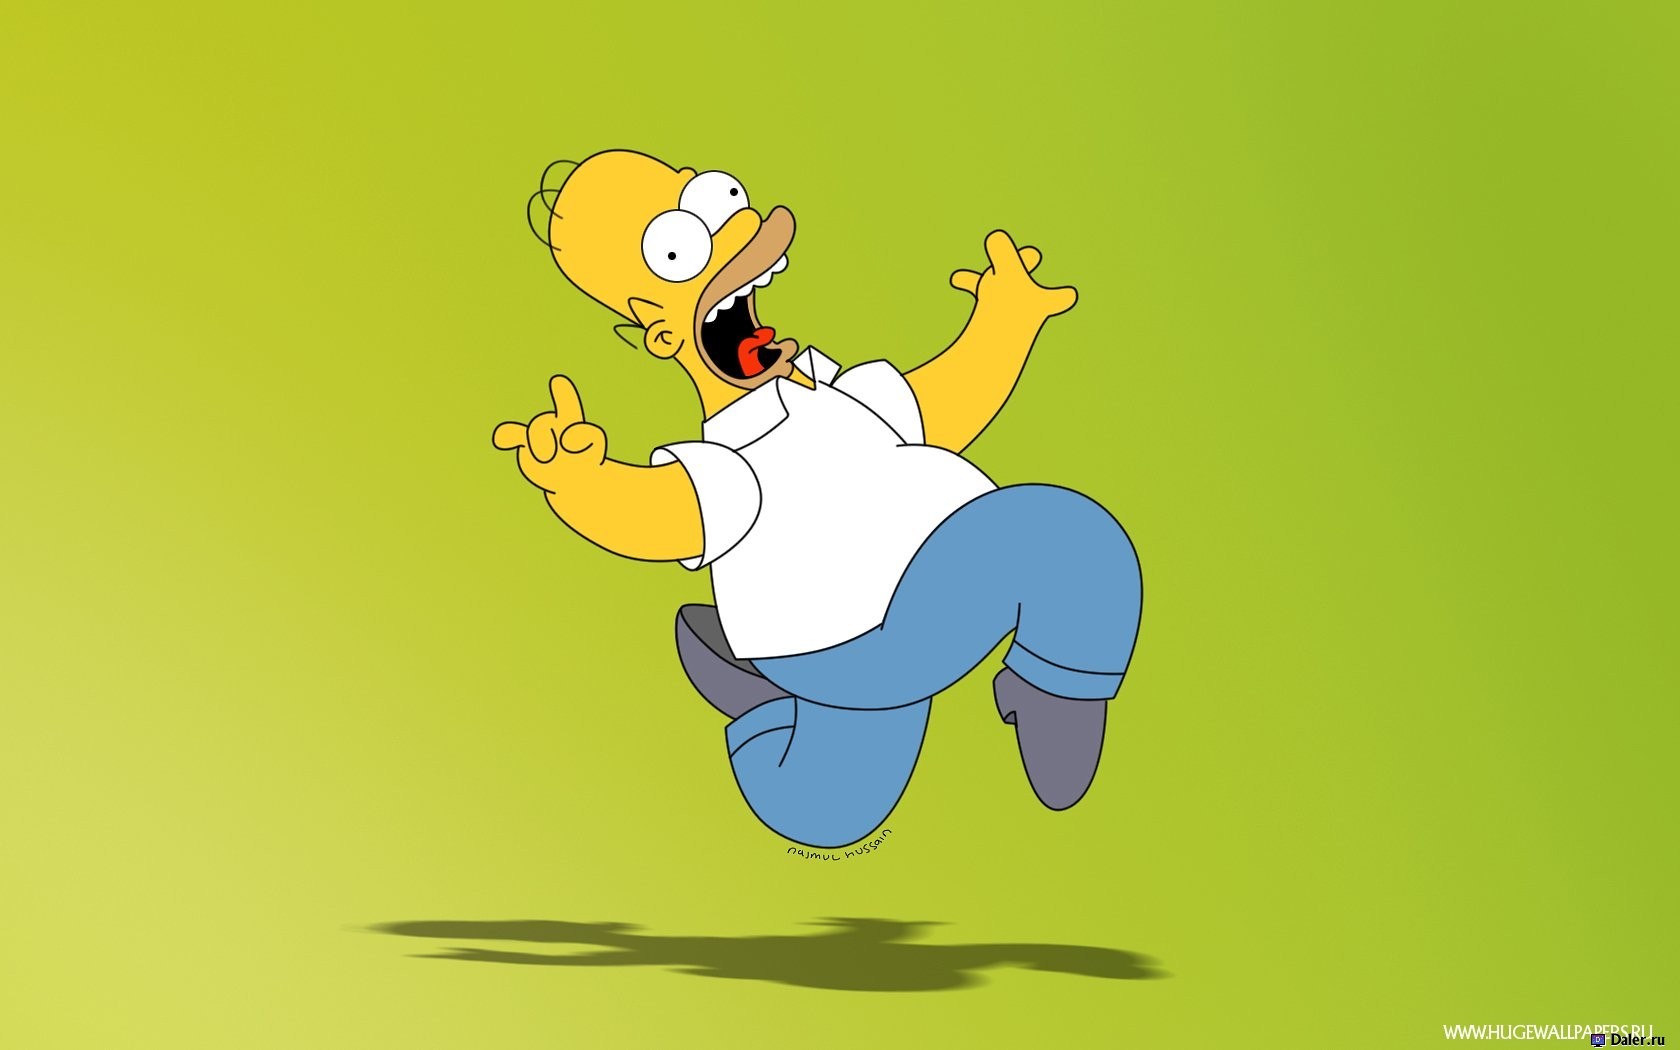 Descargar las imágenes de Homer Simpson gratis para teléfonos Android y  iPhone, fondos de pantalla de Homer Simpson para teléfonos móviles